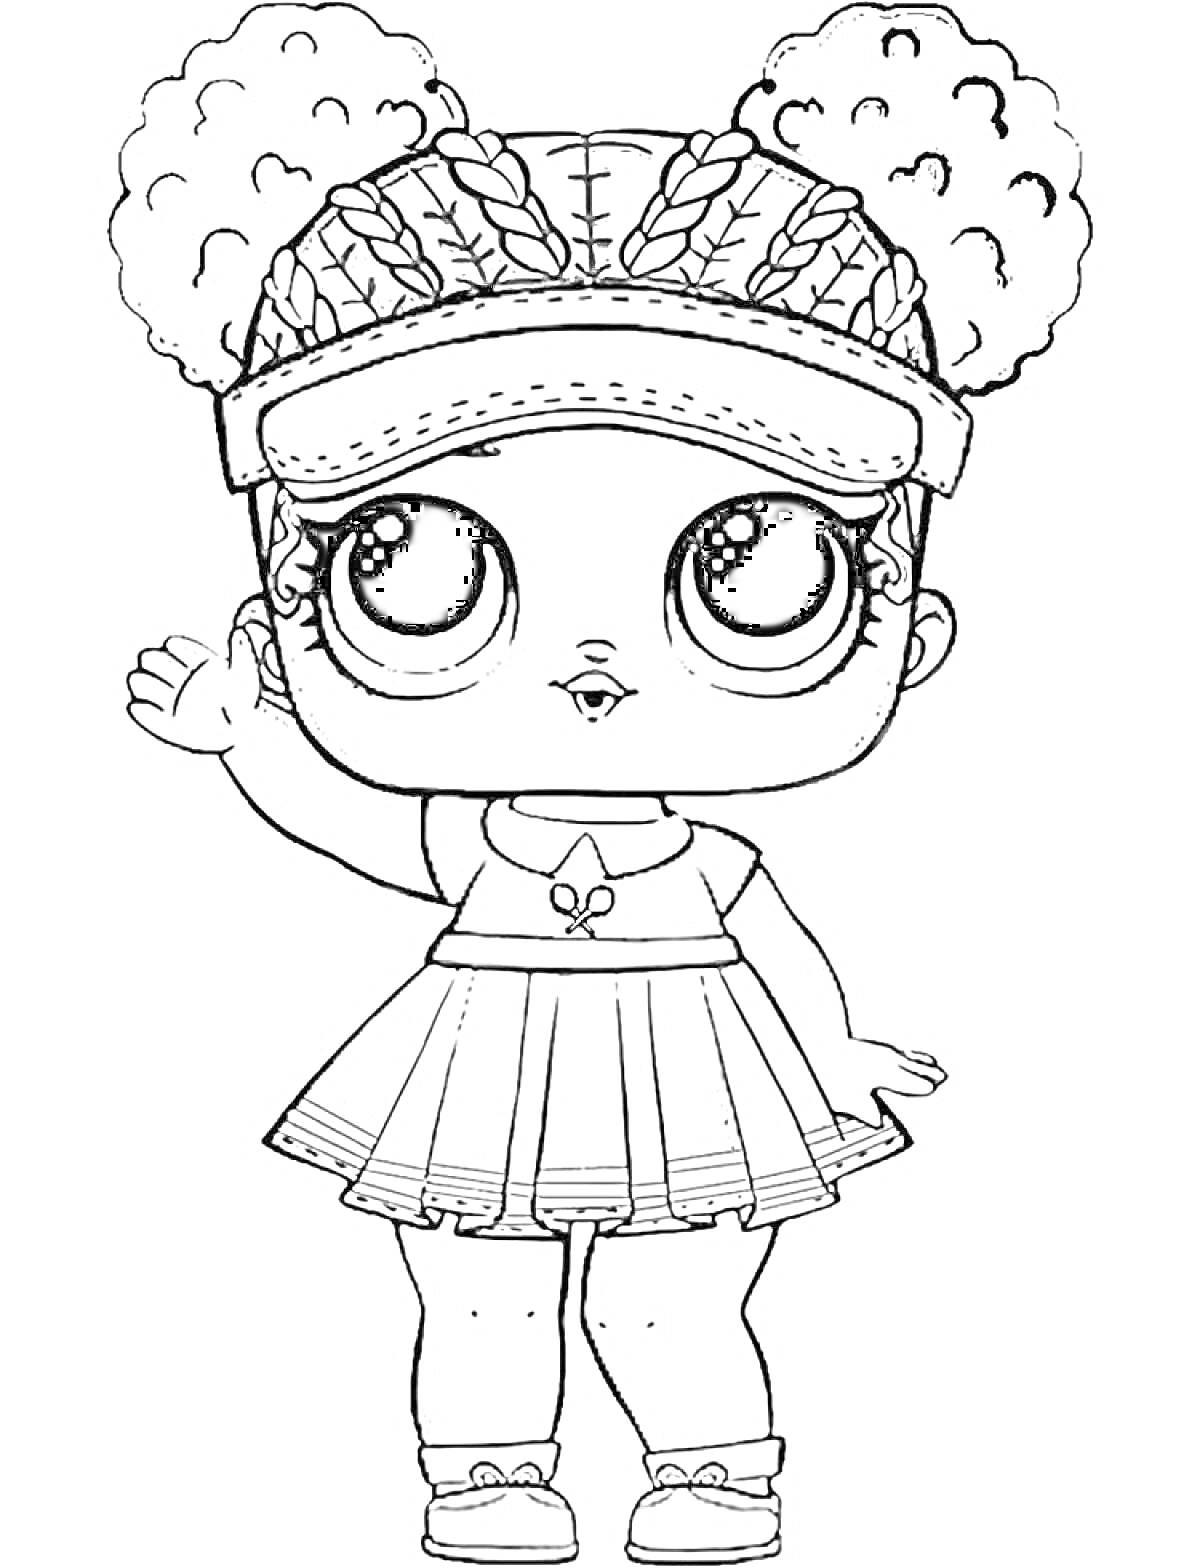 Кукла Лол с кудрявыми волосами, в бейсболке, коротком платье и туфельках, машущая рукой